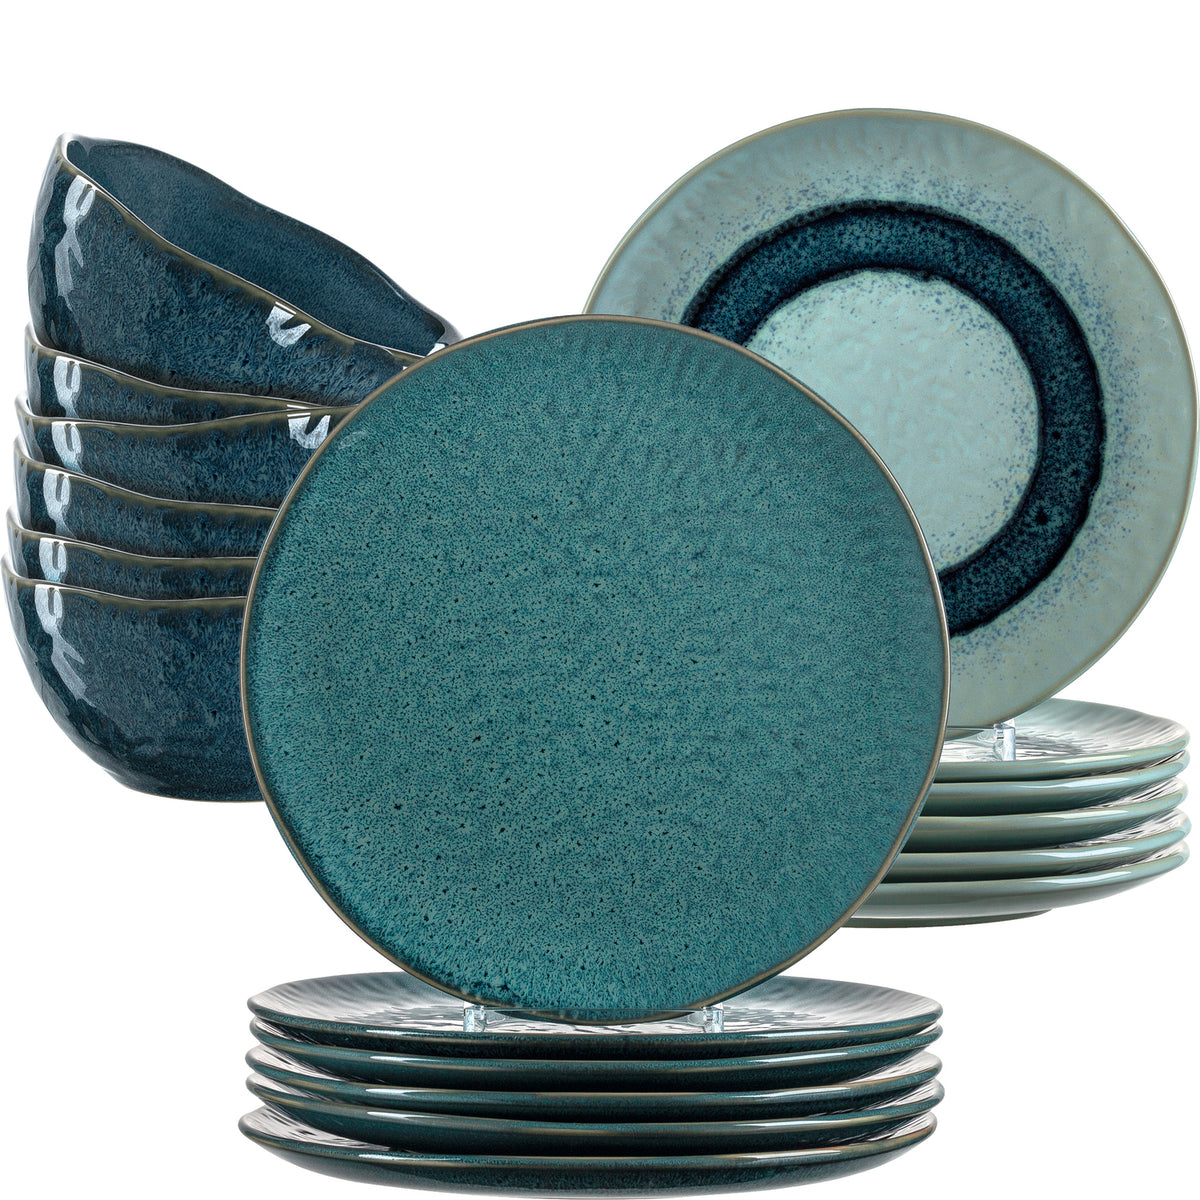 Geschirrset MATERA 18-teilig blau Keramik – Leonardo